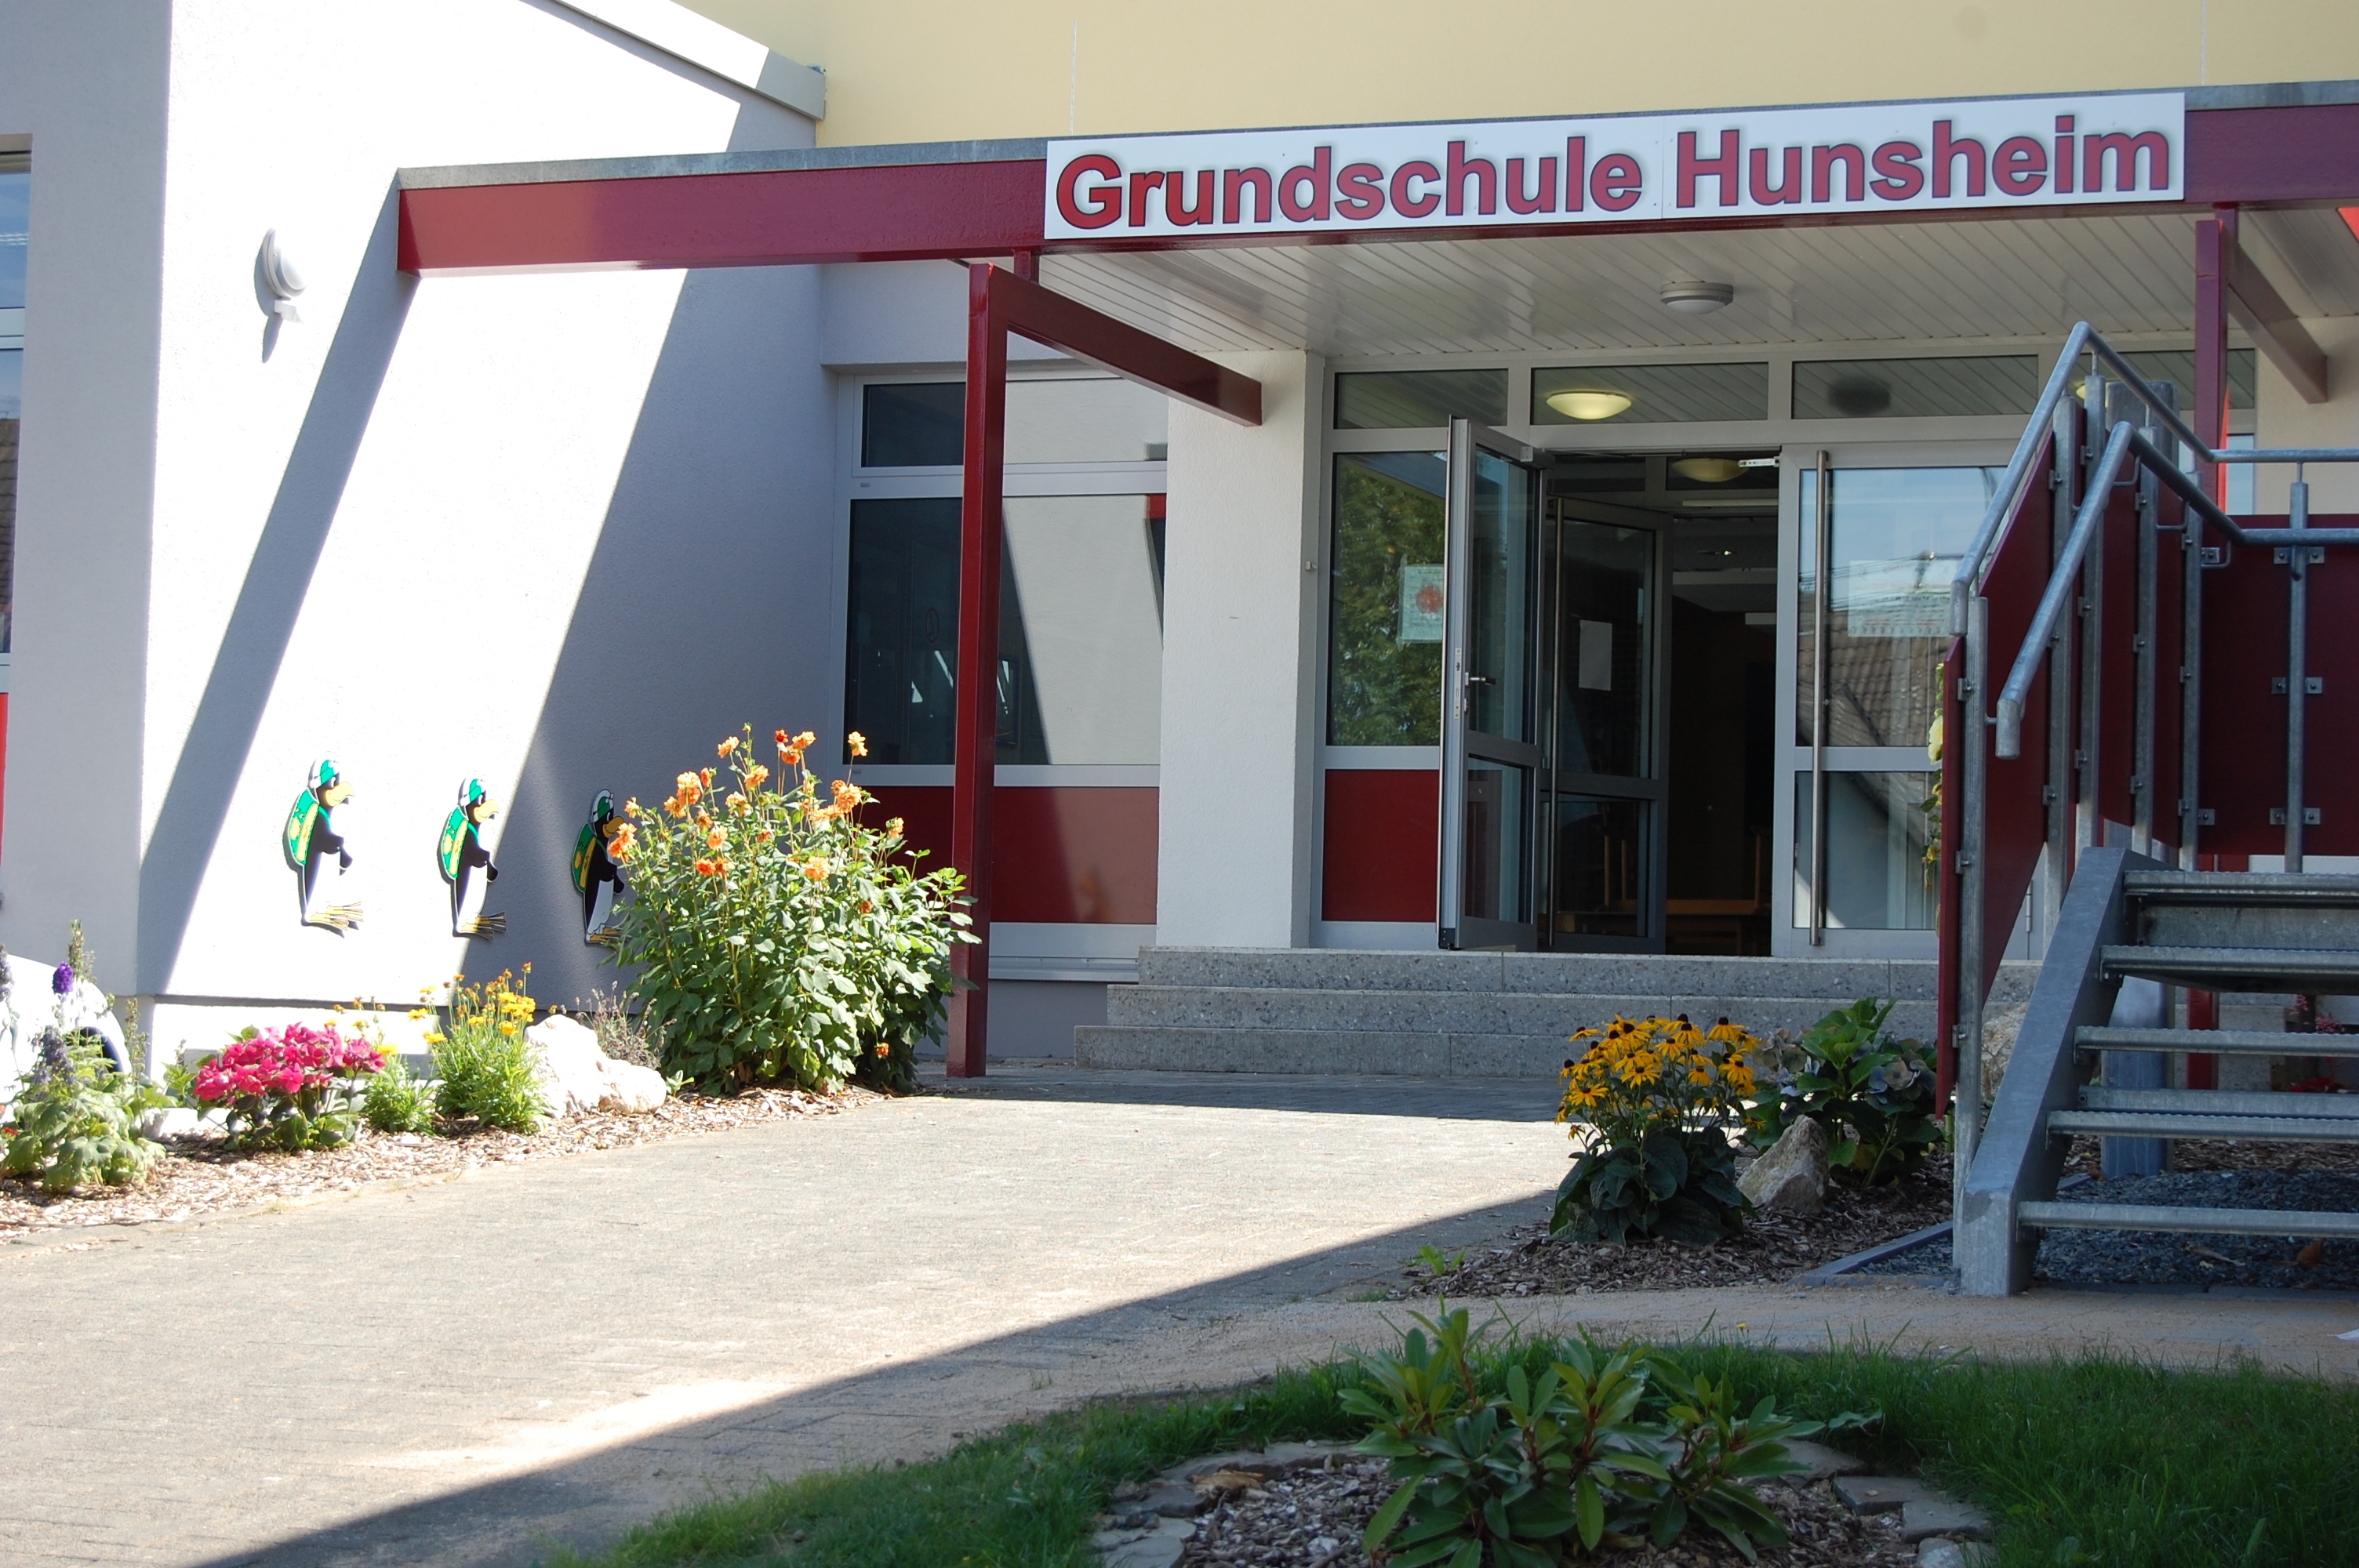 Peter von Heydt-Grundschule Hunsheim